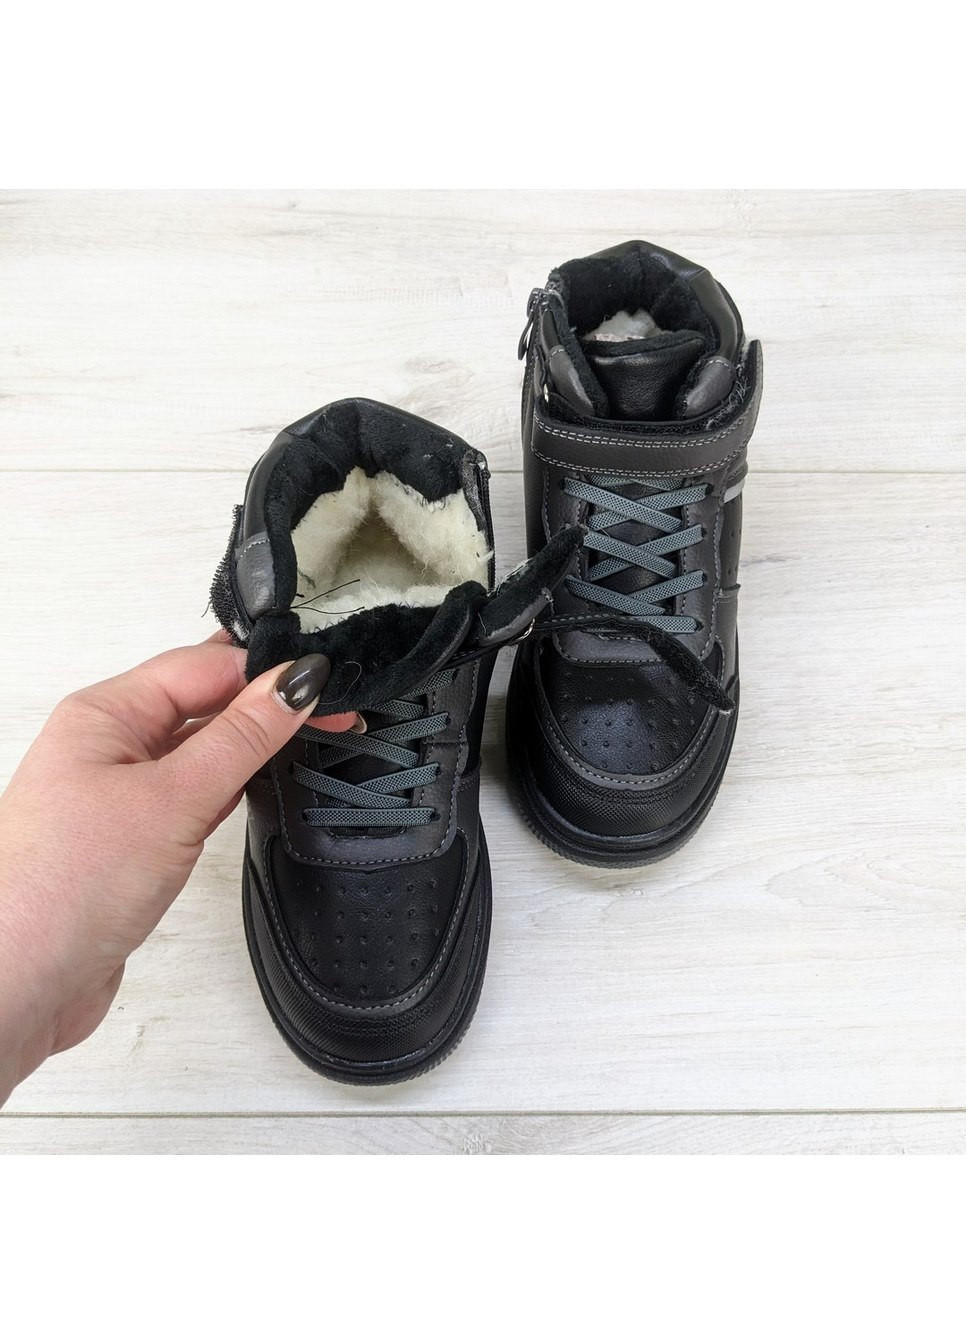 Серые повседневные зимние ботинки зимние детские для мальчика Jong Golf